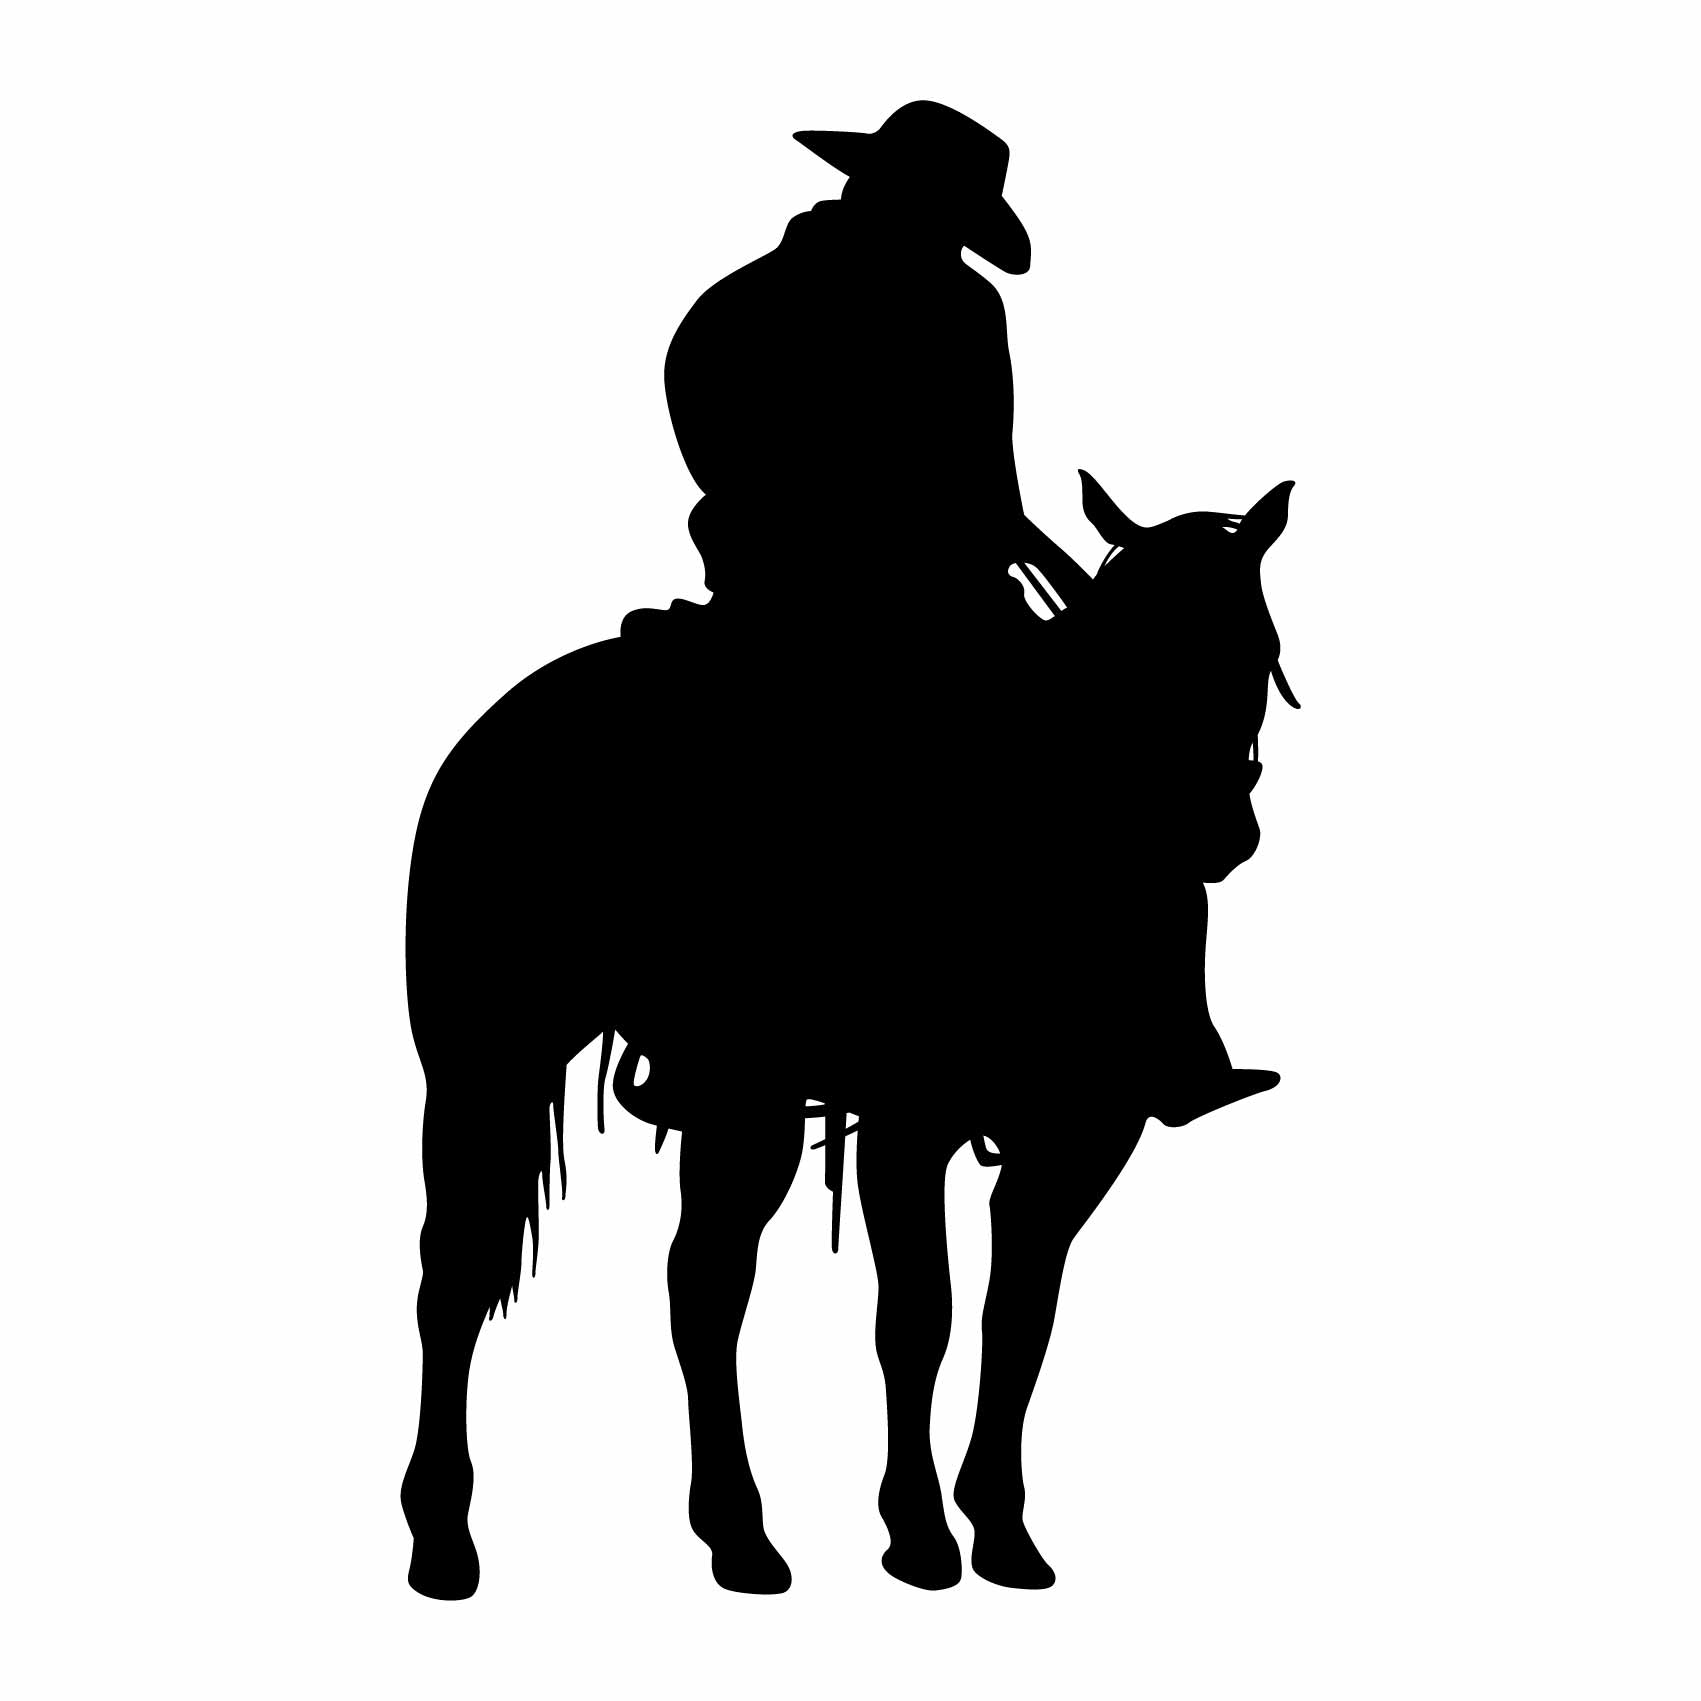 stickers-cowboy-solitaire-ref18cowboy-autocollant-muraux-cow-boy-sticker-western-chambre-enfant-garçon-cheval-lasso-(2)